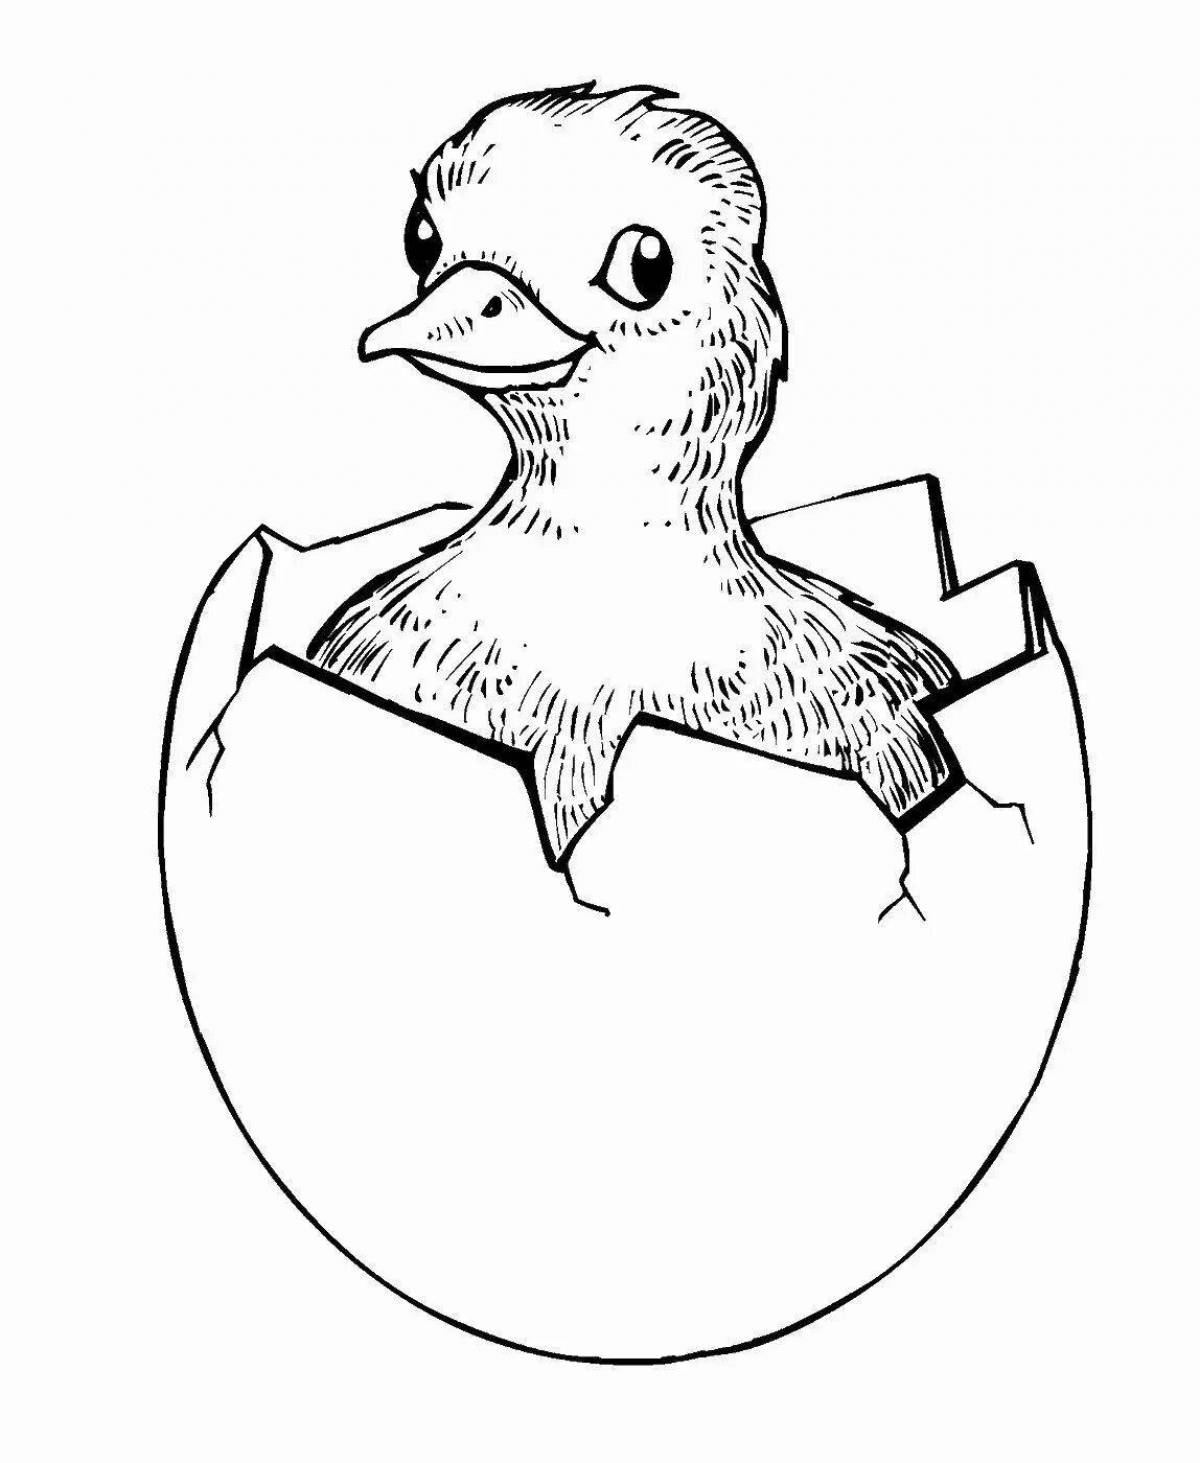 Раскраска цыплёнок вылупившийся из яйца